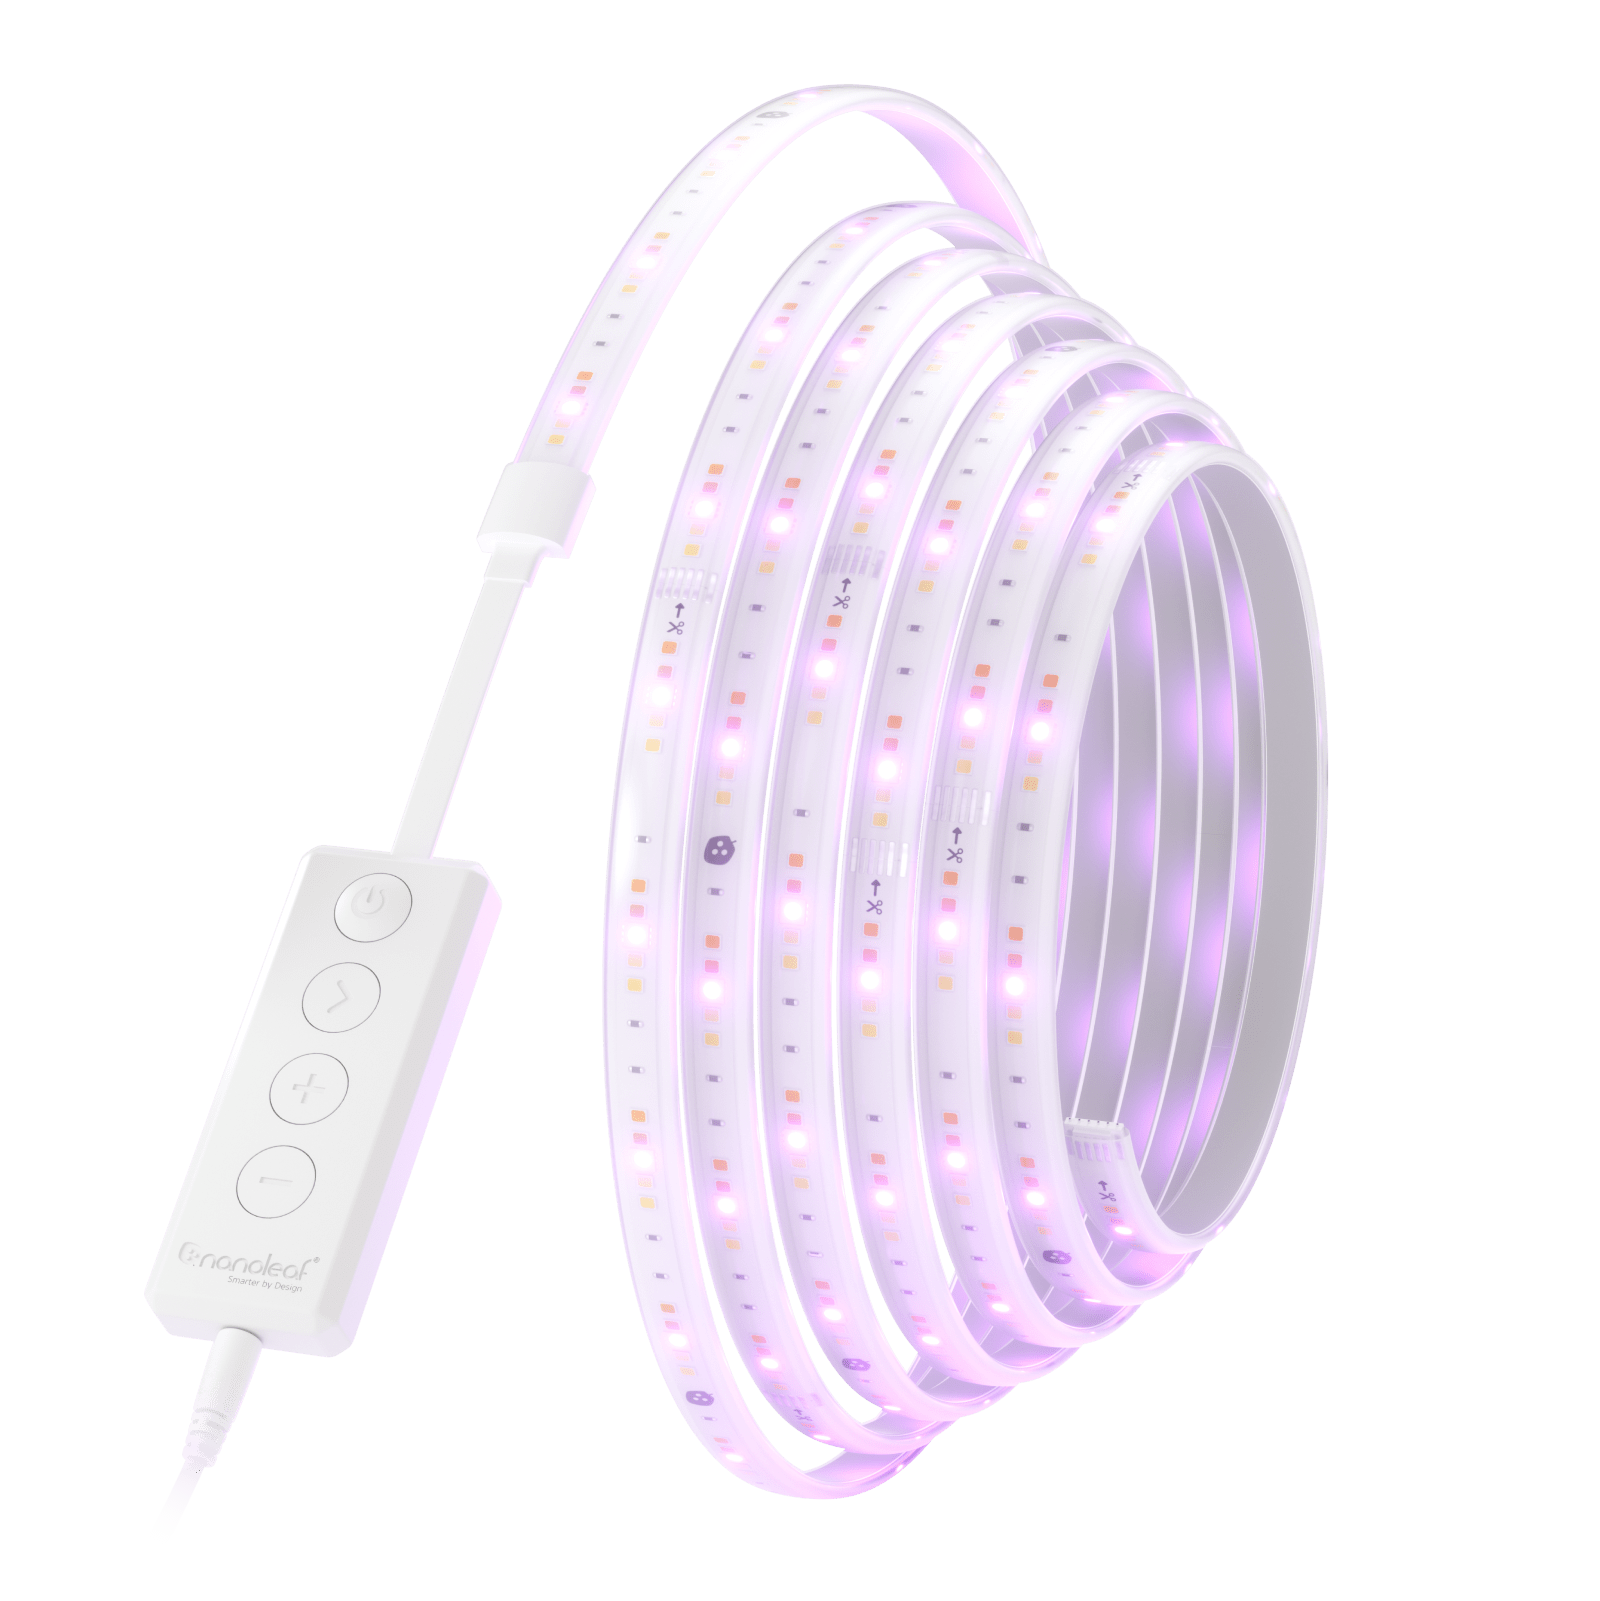 Nanoleaf Essentials Matter A19 Smart Bulb - Thread & Matter-Enabled Smart  LED Light Bulb - White and Color (3 Pack)